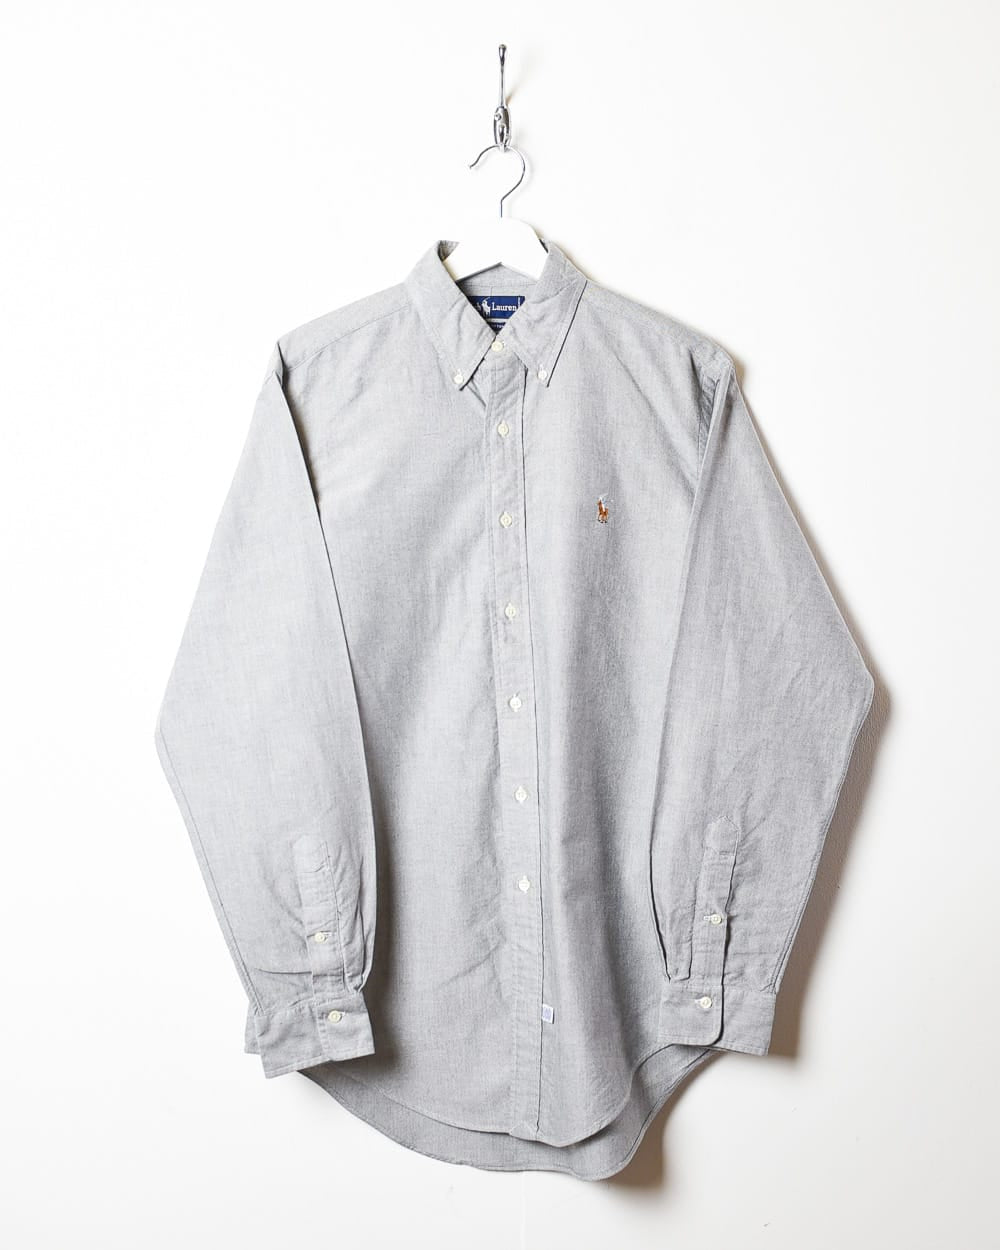 Grey Polo Ralph Lauren Shirt - Medium